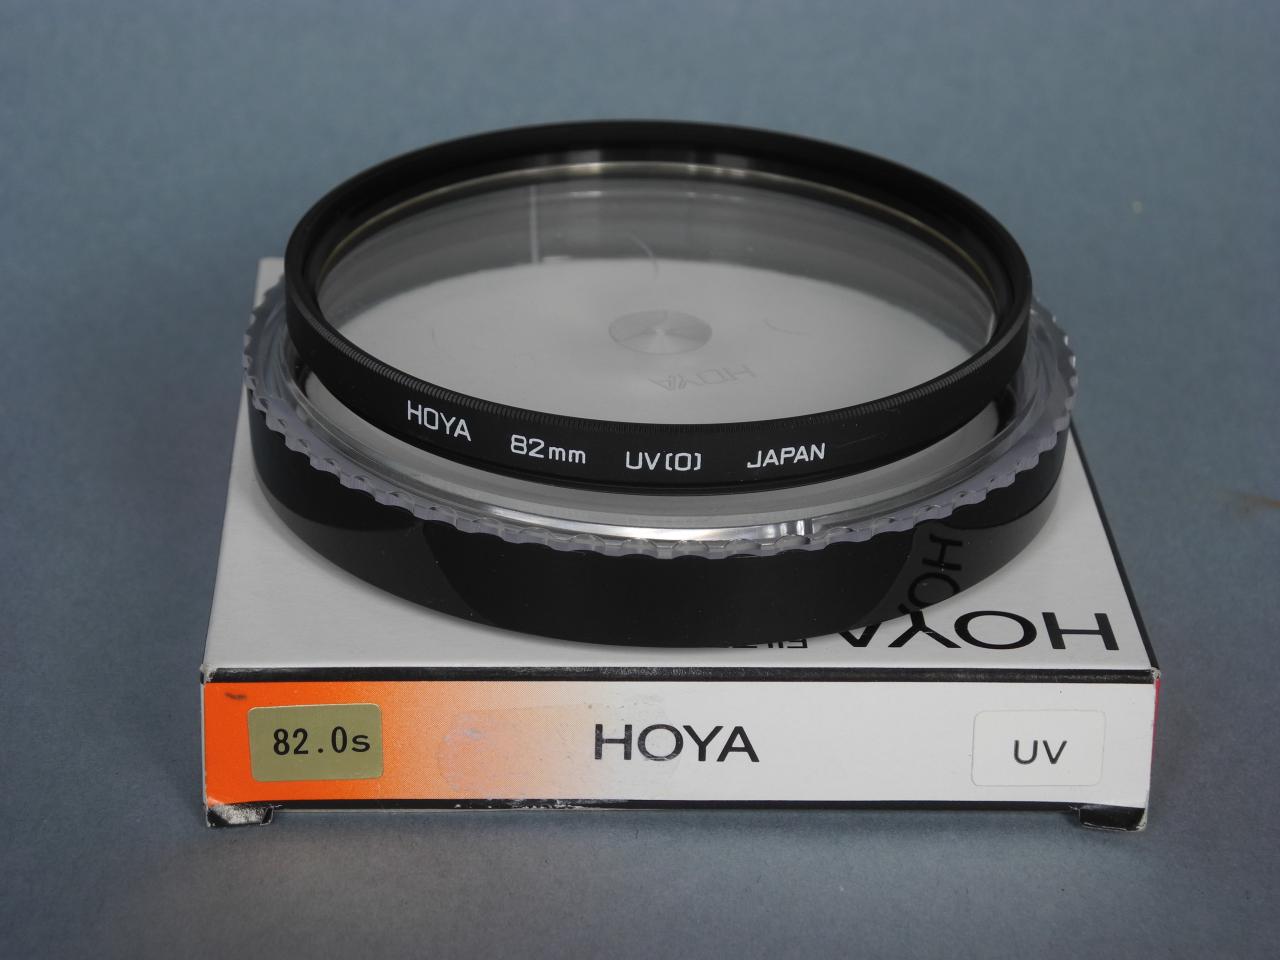 *Hoya filtre UV (0) 82mm*